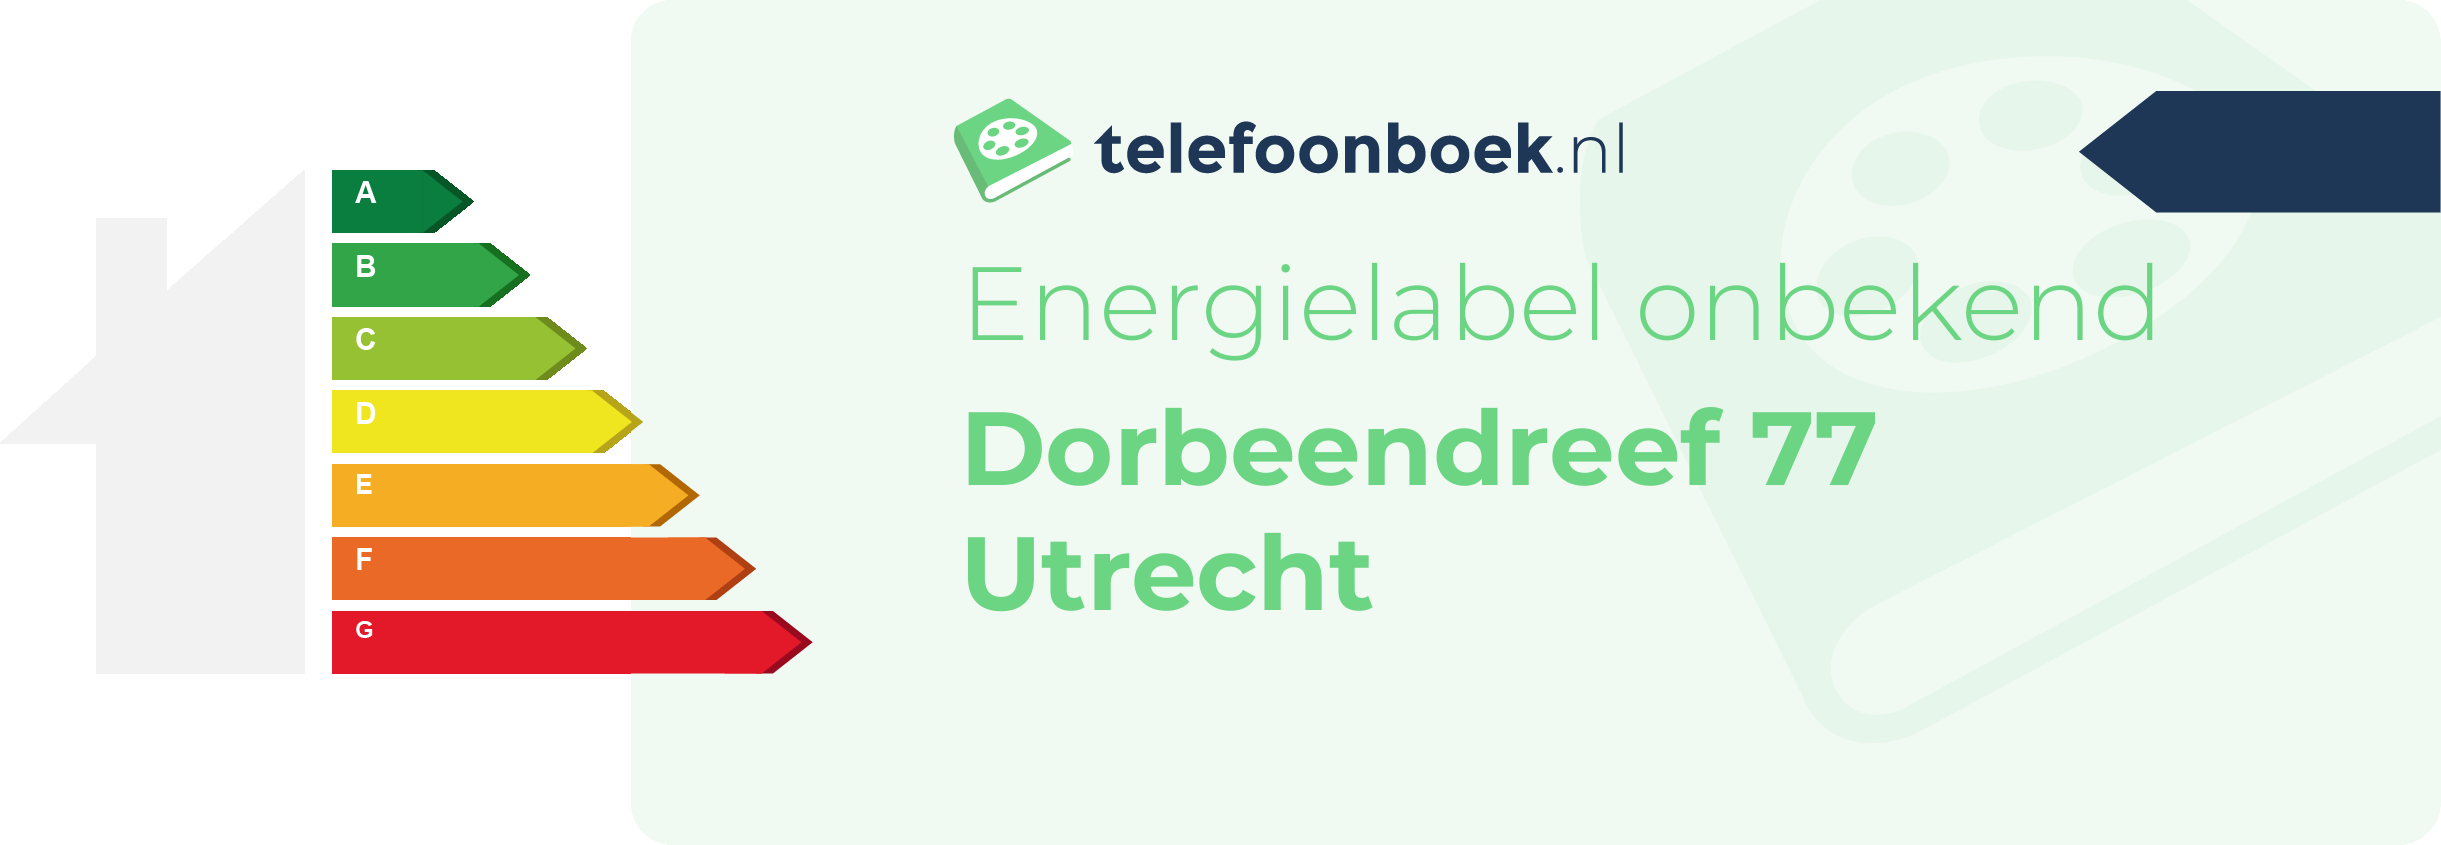 Energielabel Dorbeendreef 77 Utrecht